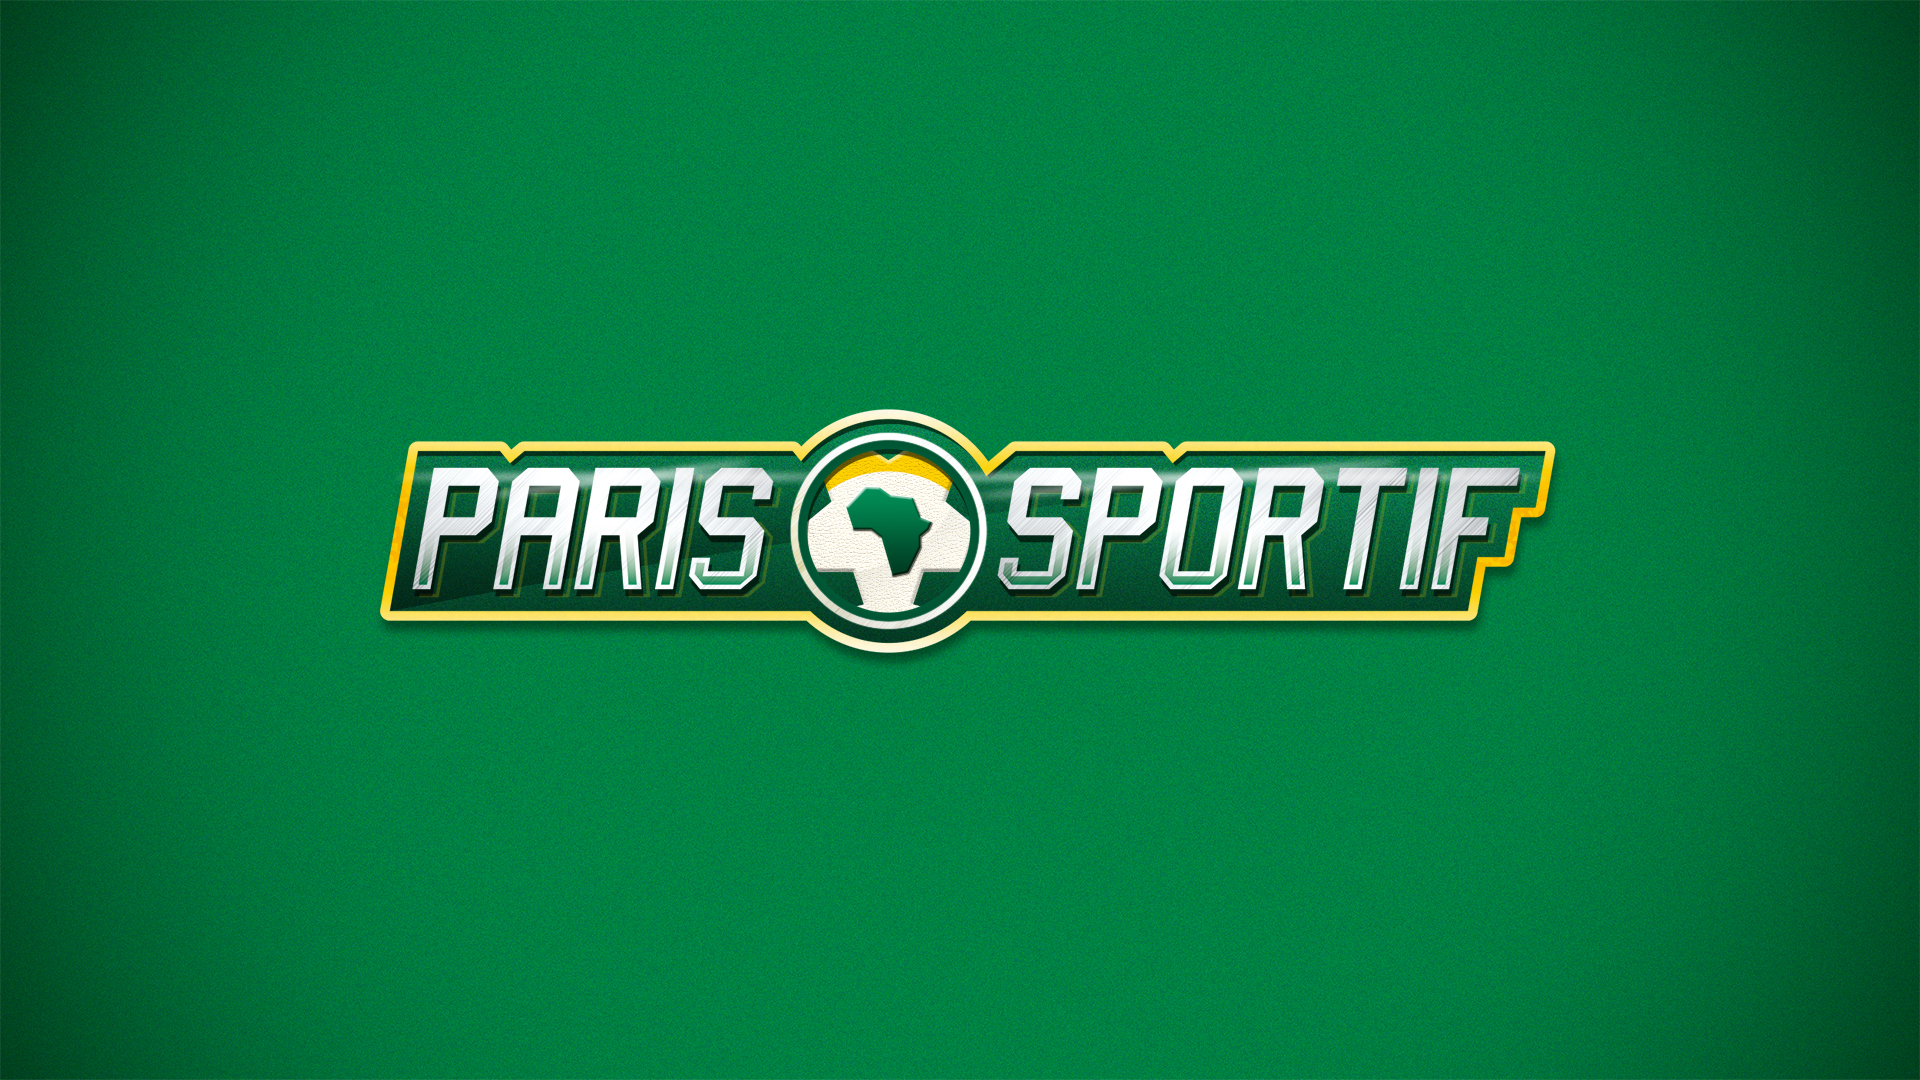 Paris Sportif logo 5